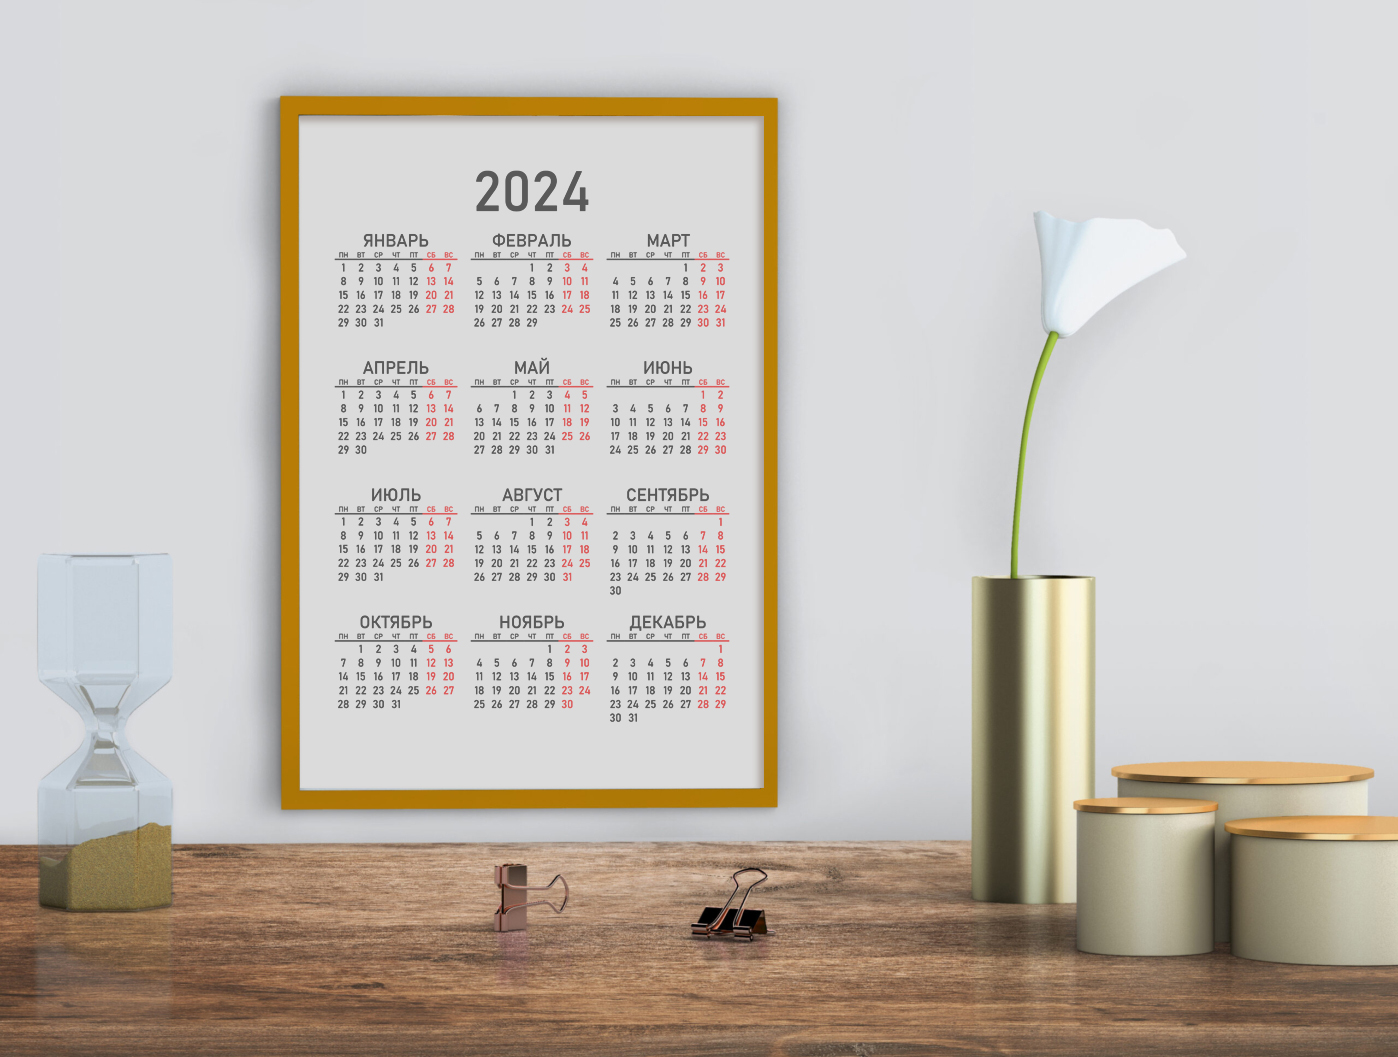 Календарь как элемент интерьера | Процвет